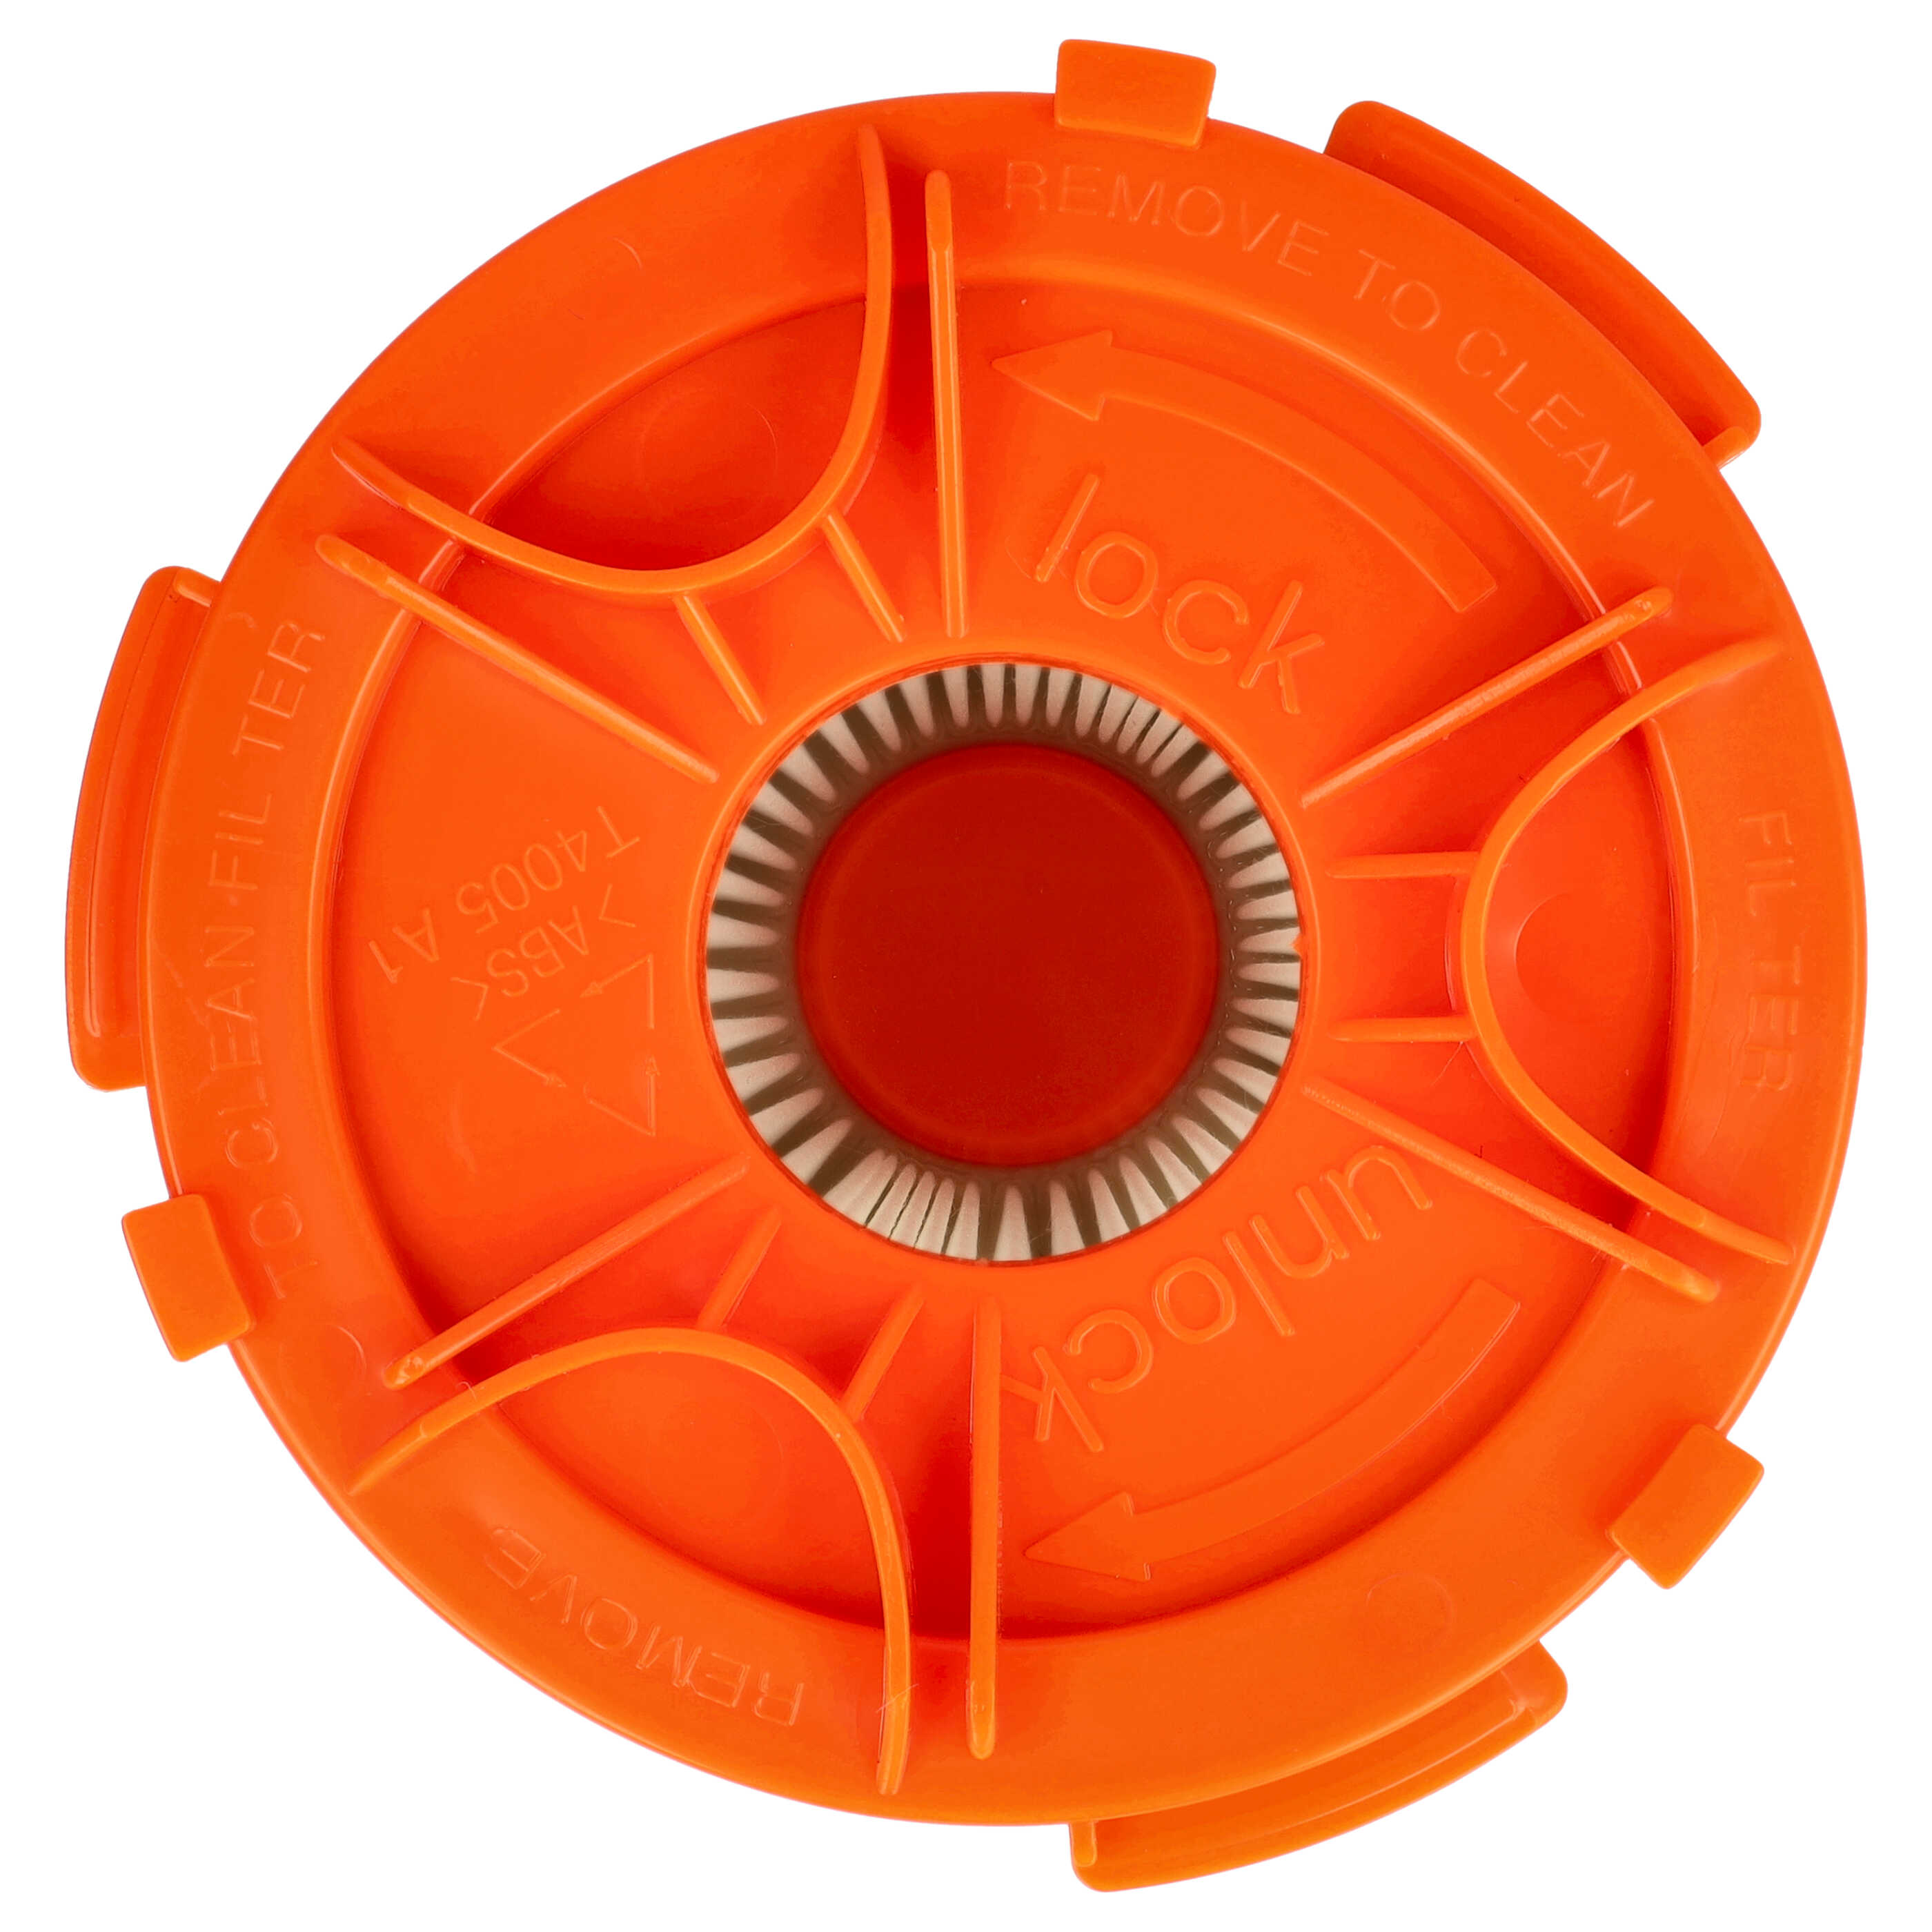 Filtro sostituisce AEG/Electrolux 4071387353 per aspirapolvere - filtro HEPA, nero / arancione / bianco